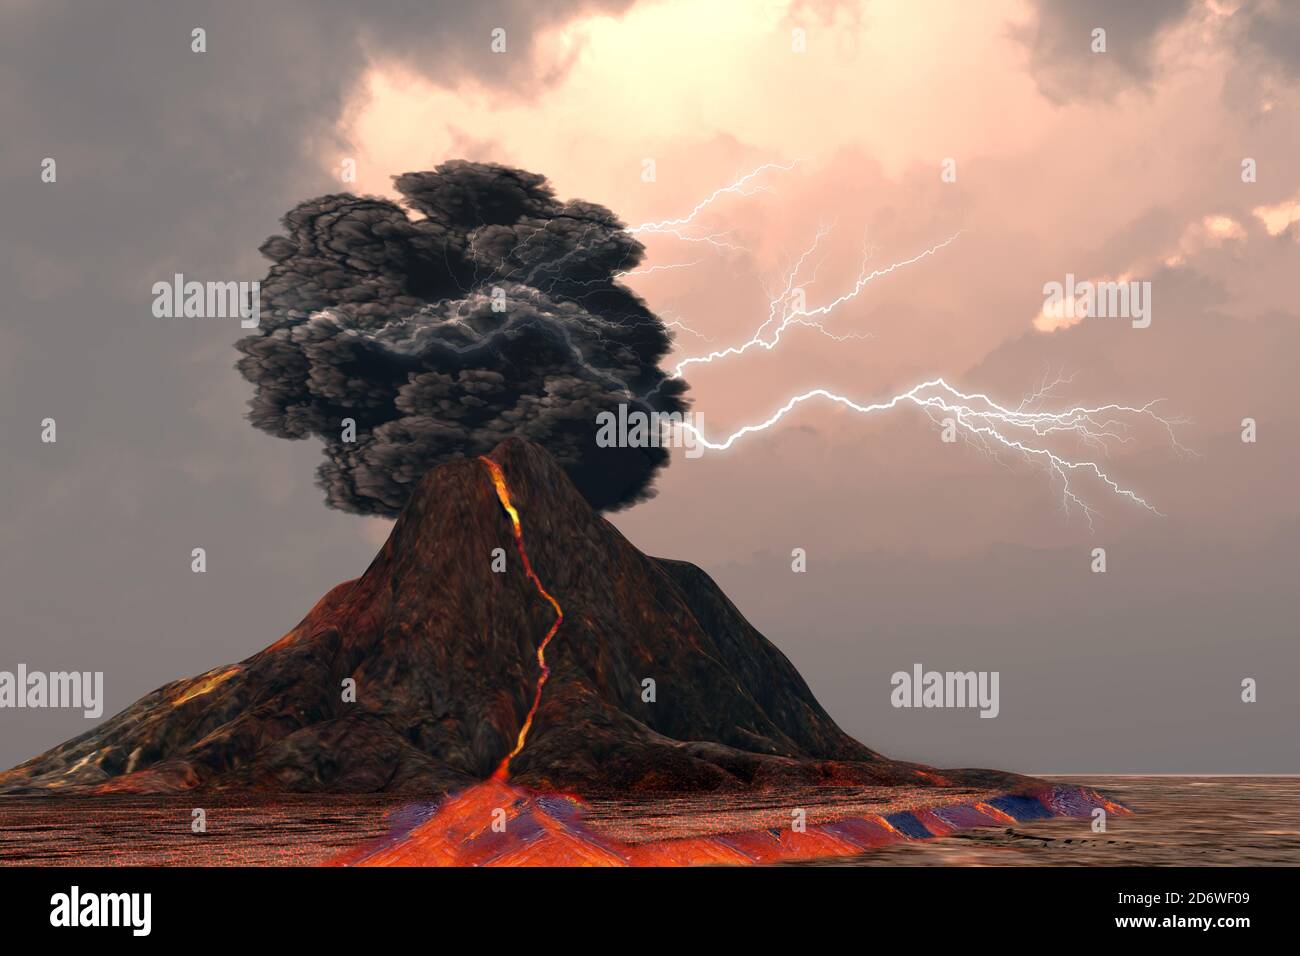 Volcano and Lightning - Blitz und Donner brechen in einer wabernden Rauchwolke, als ein Vulkan mit glühender Lava ausbricht. Stockfoto